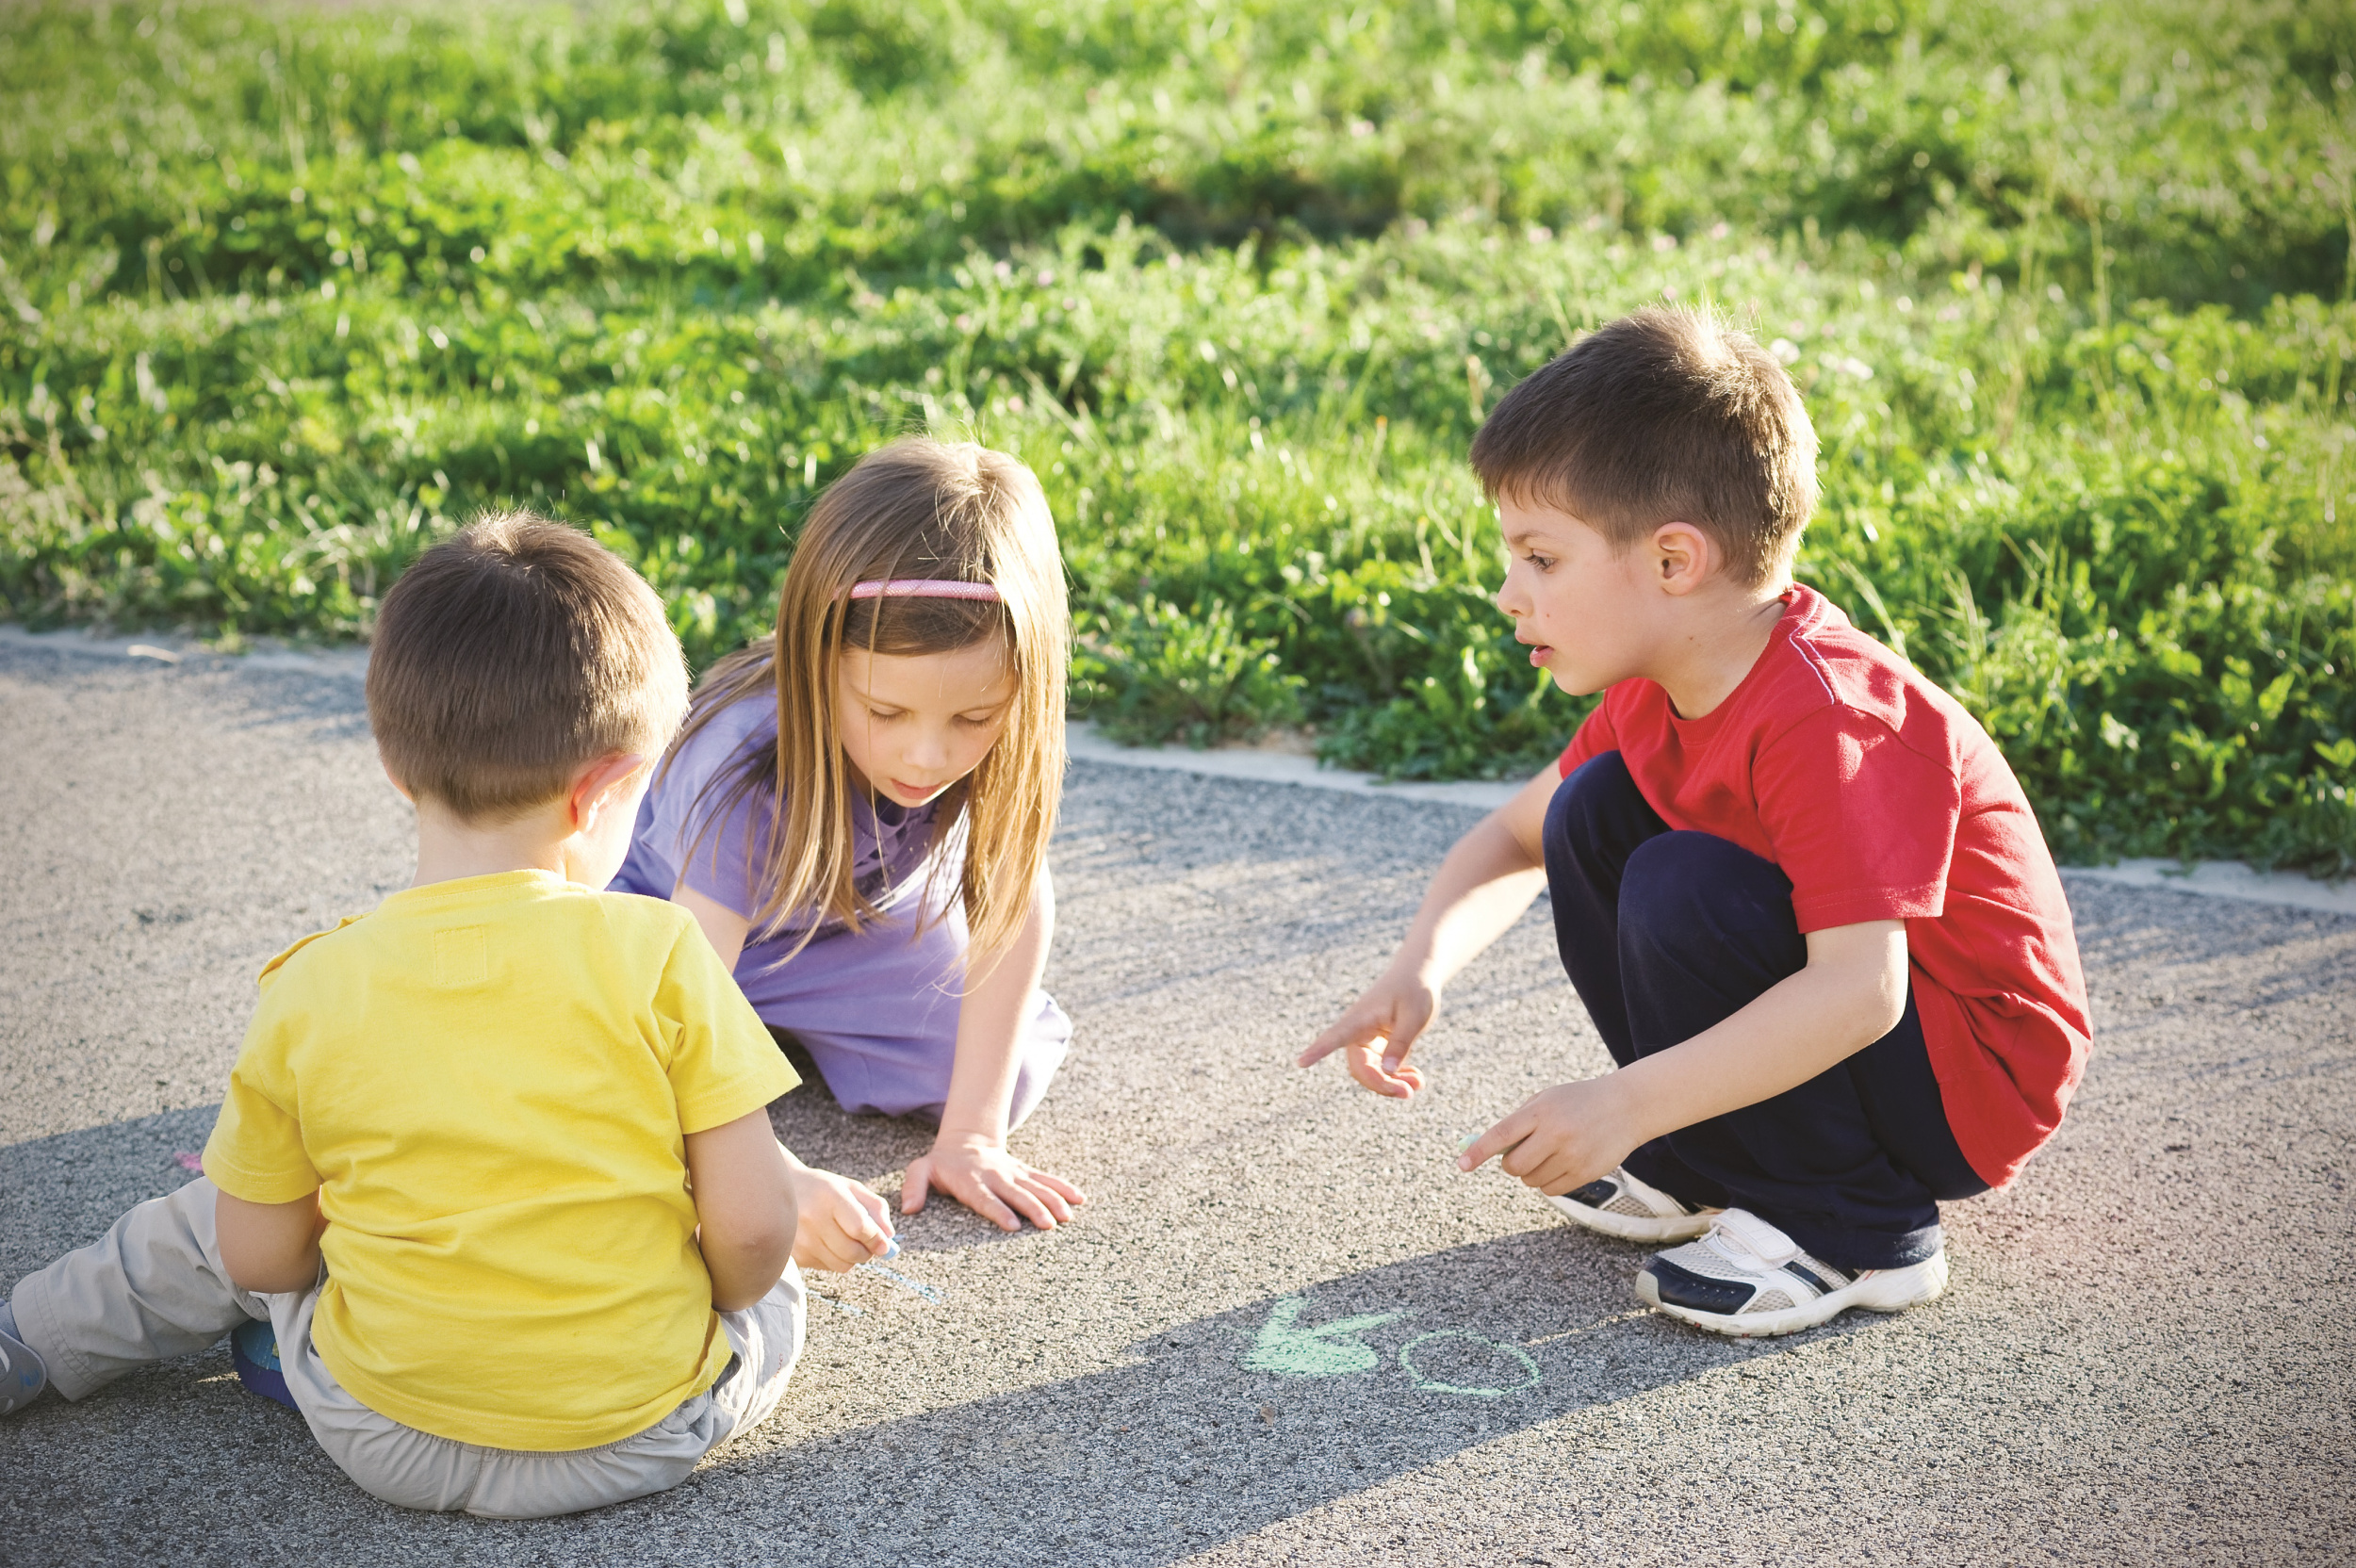 Дети играющие на дороге. Дворовые игры. Современное детство. Детские игры. Играющие дети в парке.